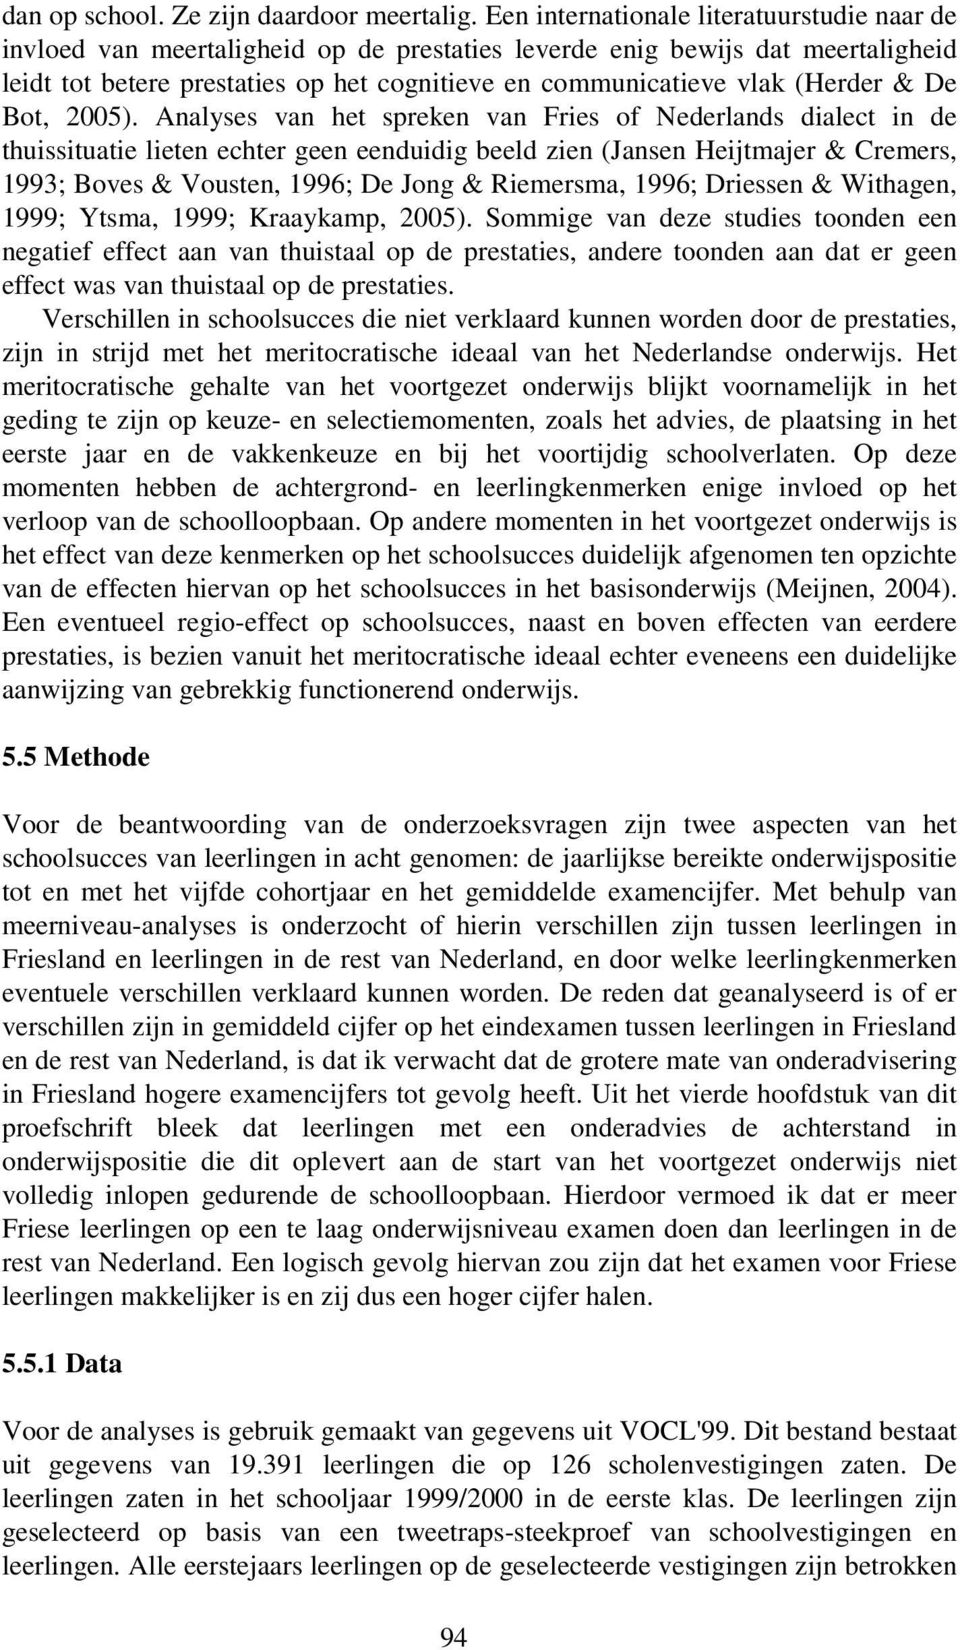 (Herder & De Bot, 2005).